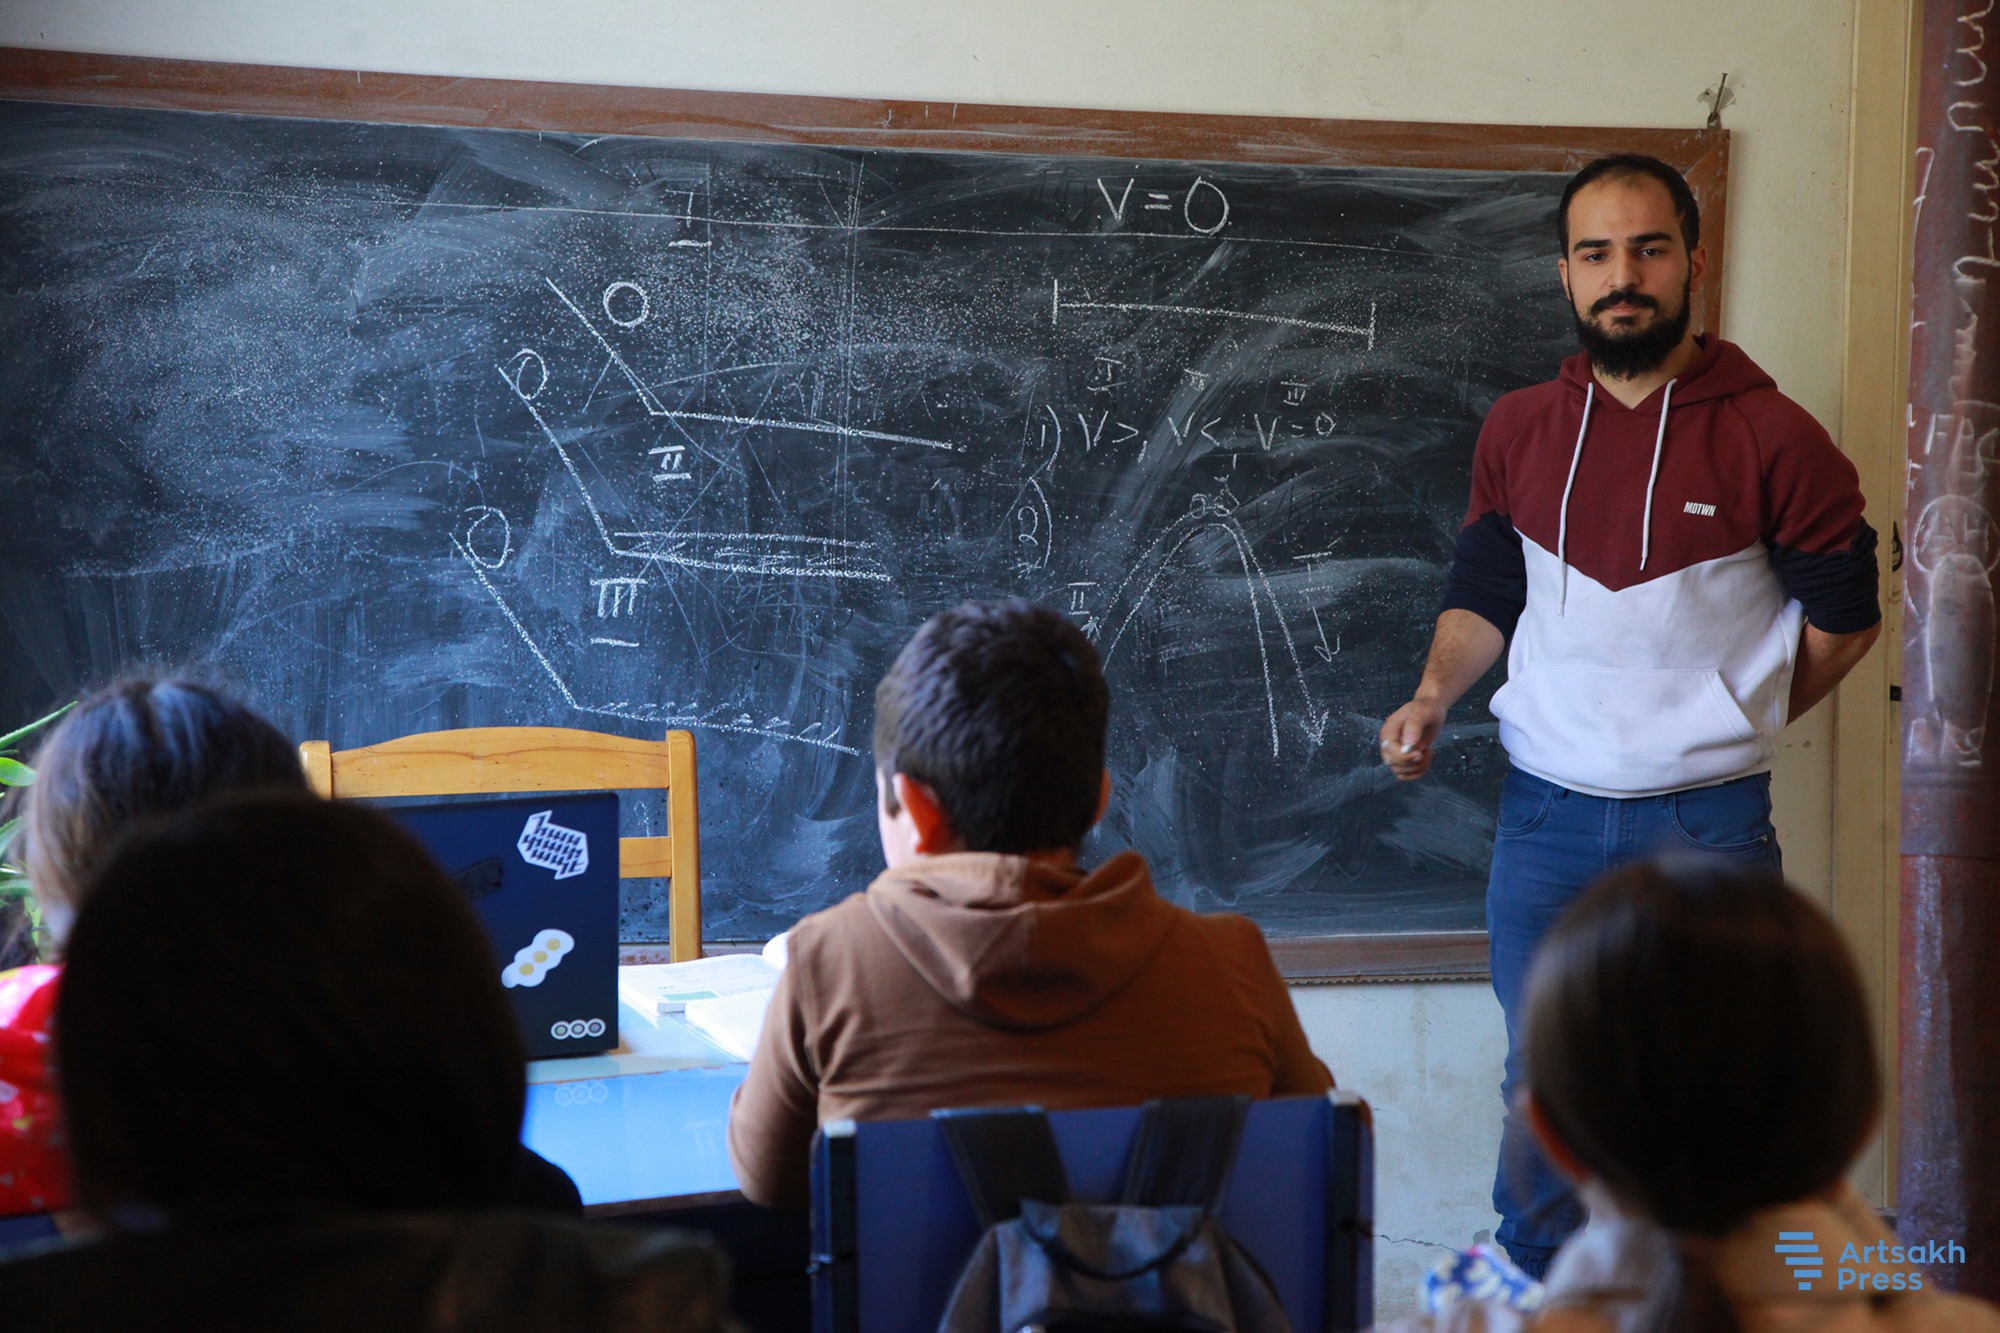 If we live in Artsakh and with Artsakh, Artsakh will start living anew. Teacher of “Teach for Armenia” program